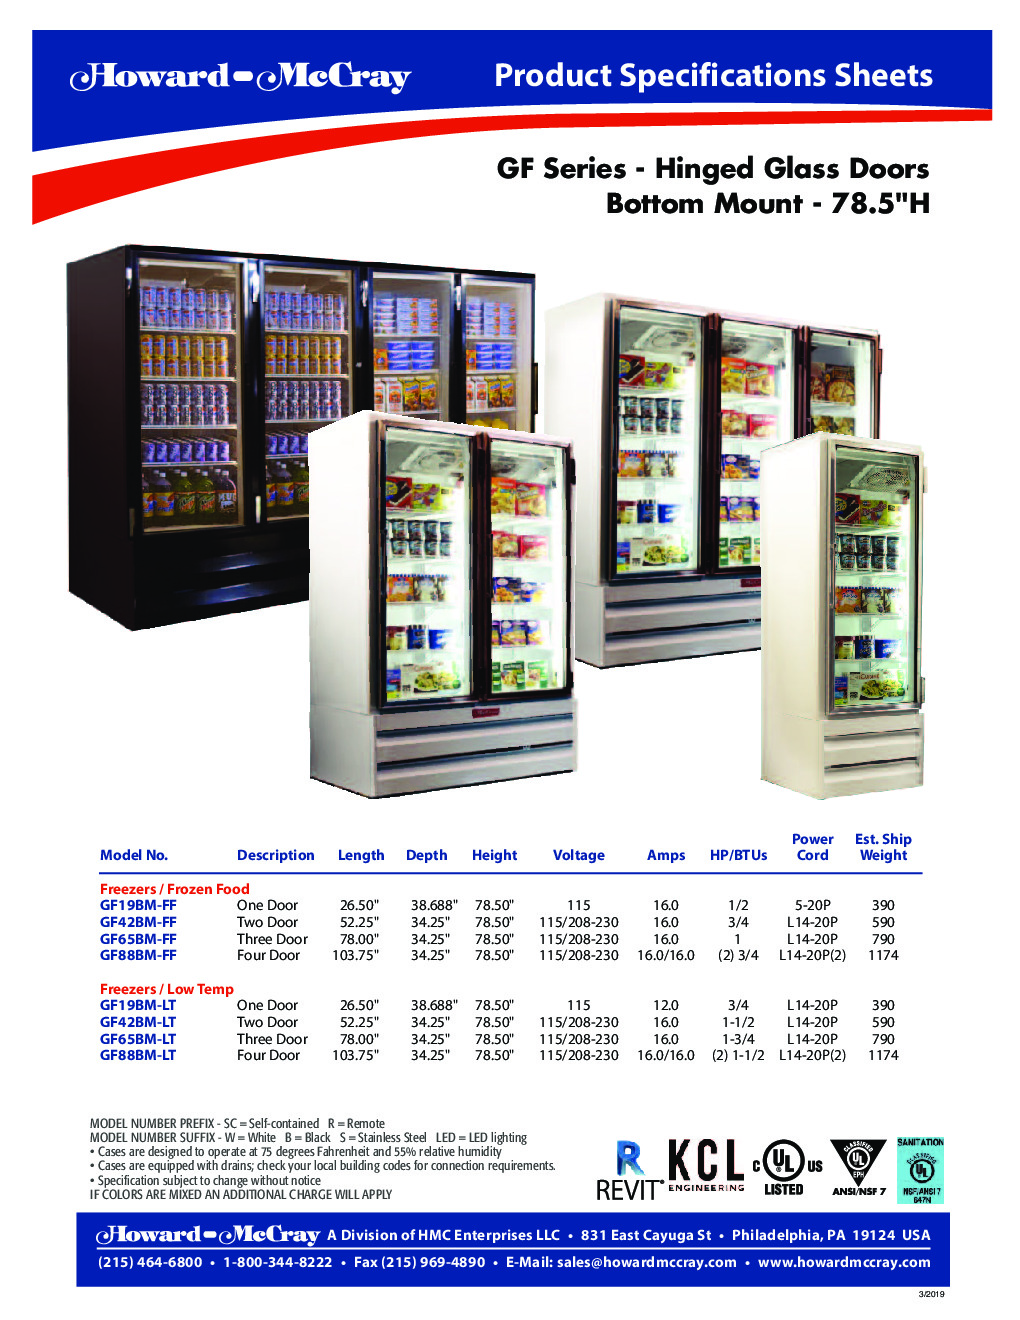 Howard-McCray GF65BM-LT Merchandiser Freezer